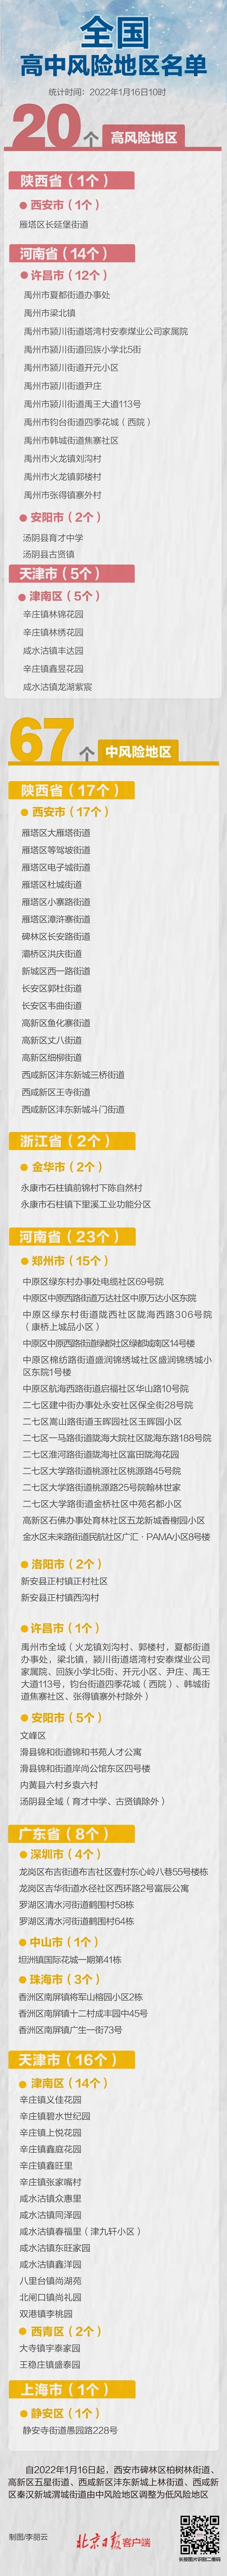 杭州发布大雾橙色预警信号 - Peraplay Gaming - 博牛社区 百度热点快讯